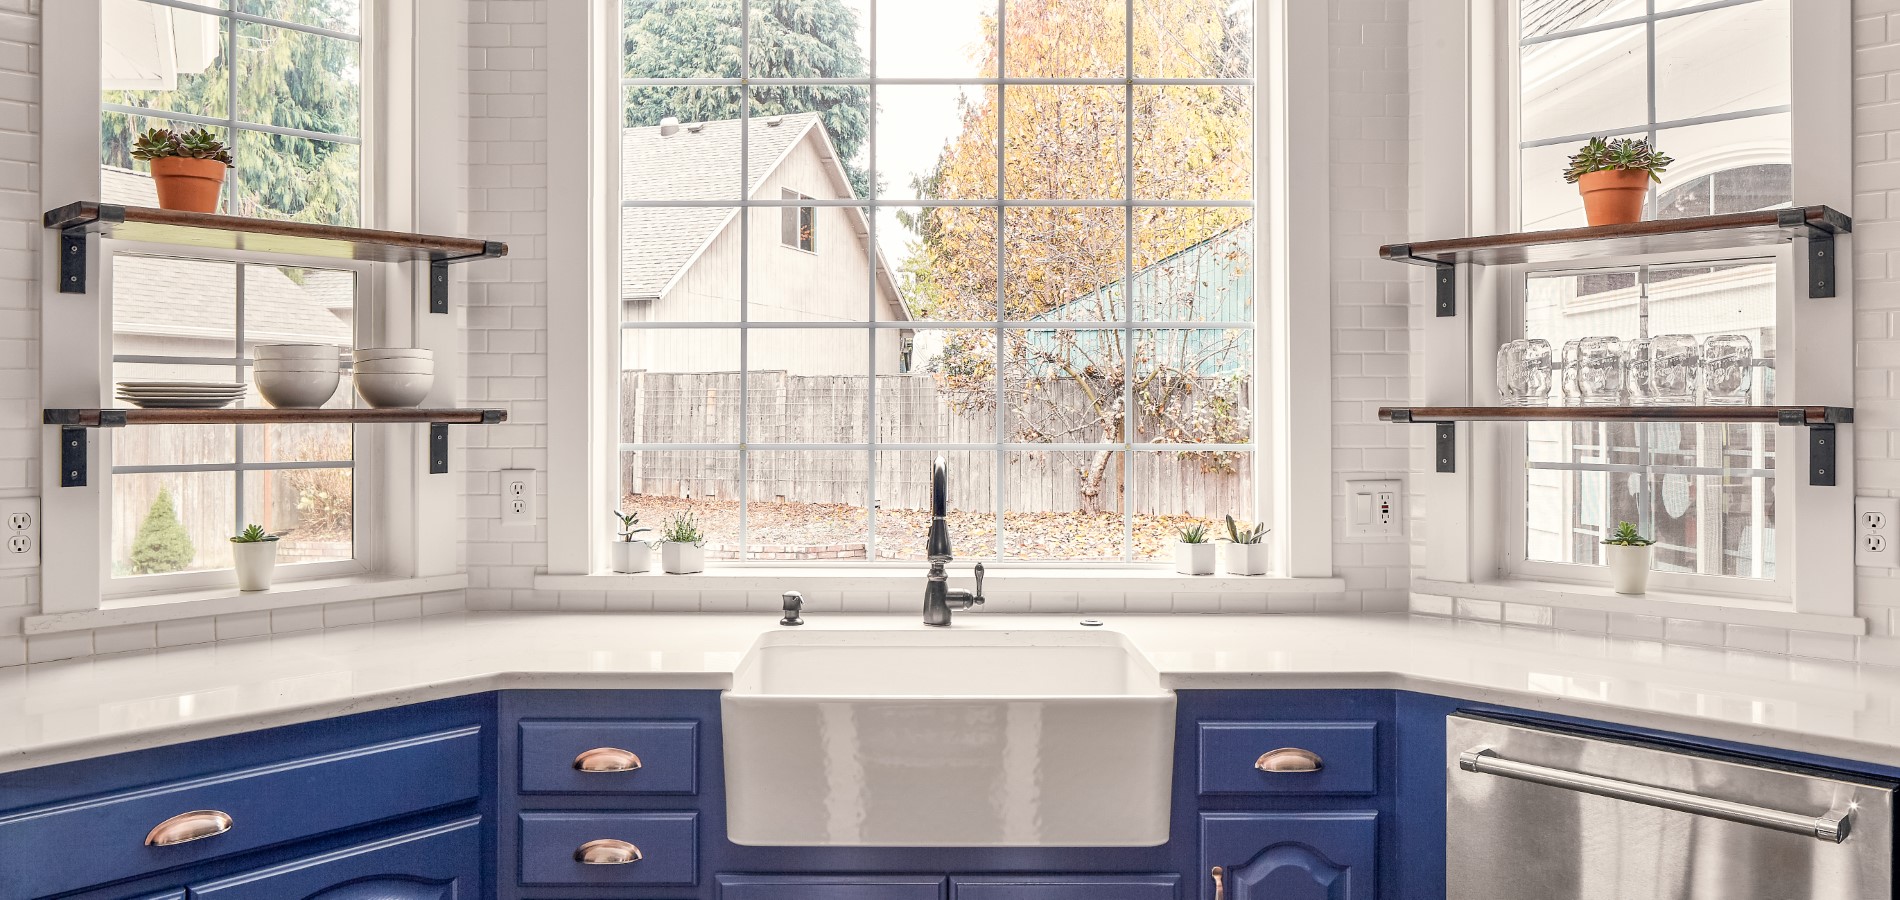 Farmhouse blue and white kitchen remodel, Golden Rule Remodeling & Design, Salem Oregon